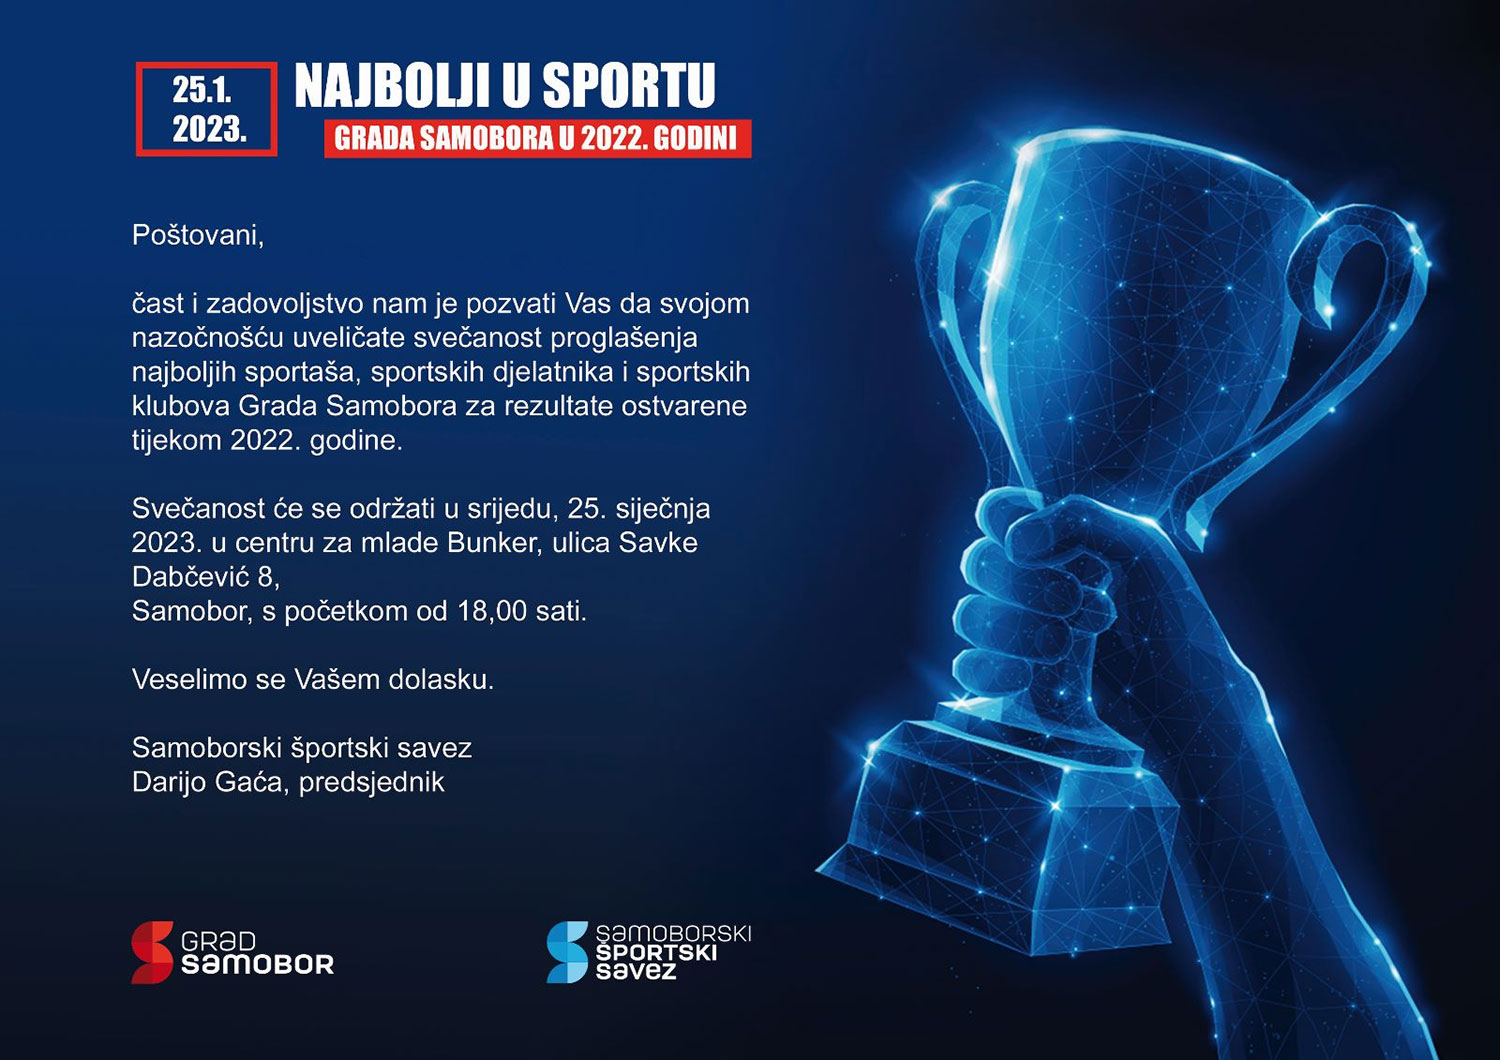 Najava svečanosti proglašenja najboljih u sportu Grada Samobora za 2022. godinu